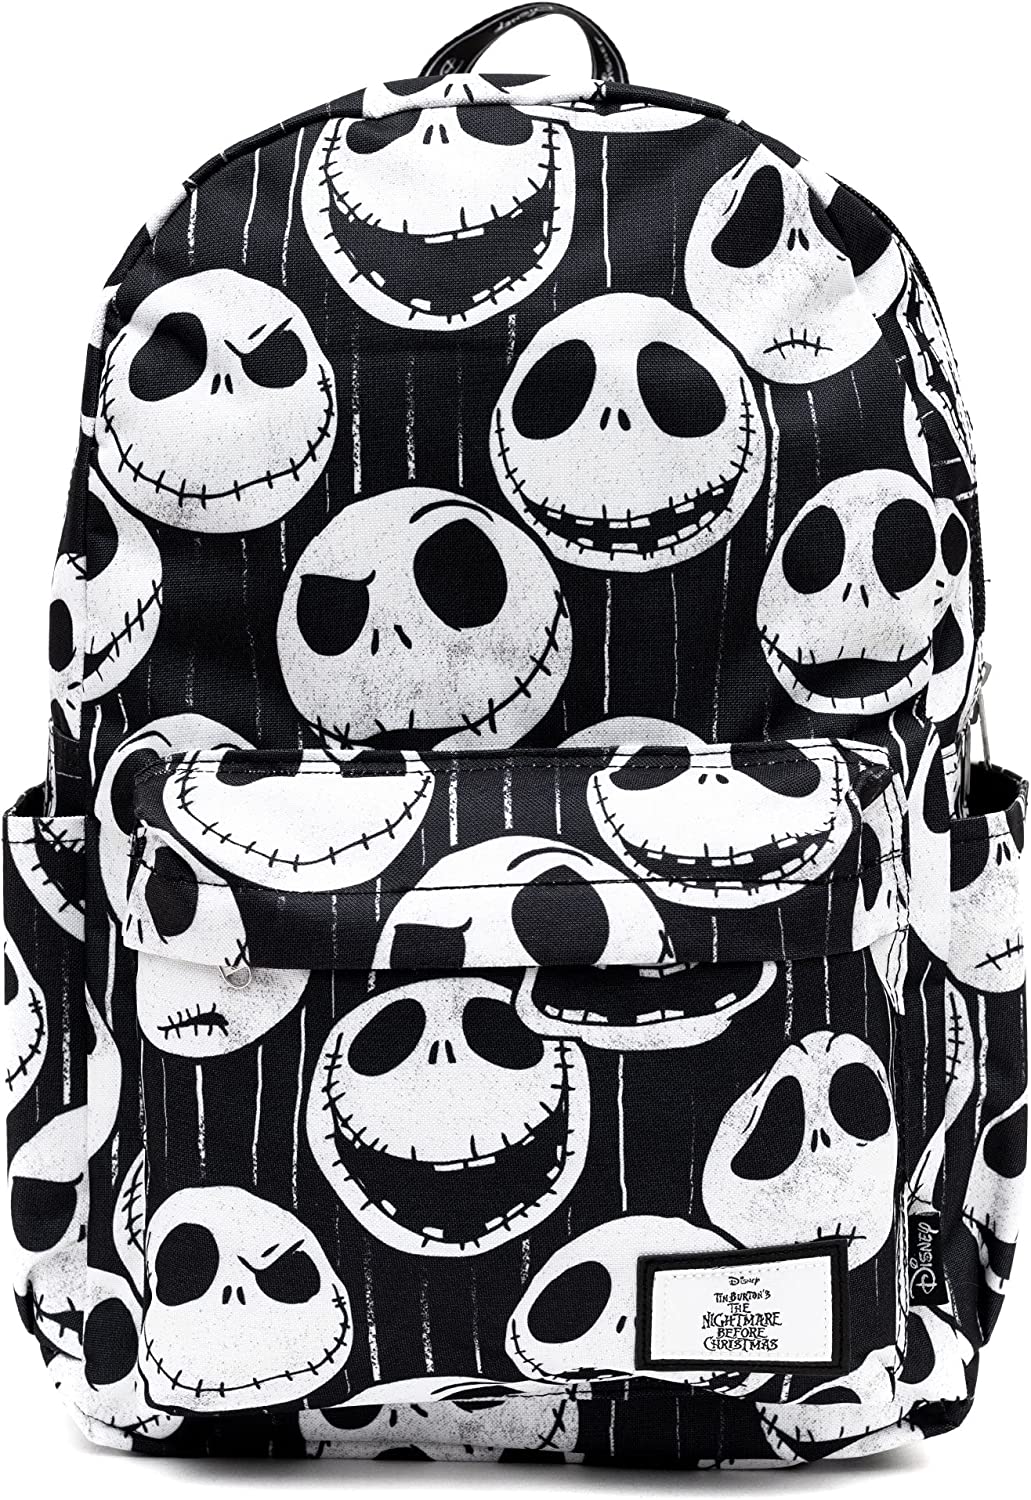 Disney - Nightmare Before Christmas Jack Skellington - 17" Full Size Nylon Backpack - Wondapop